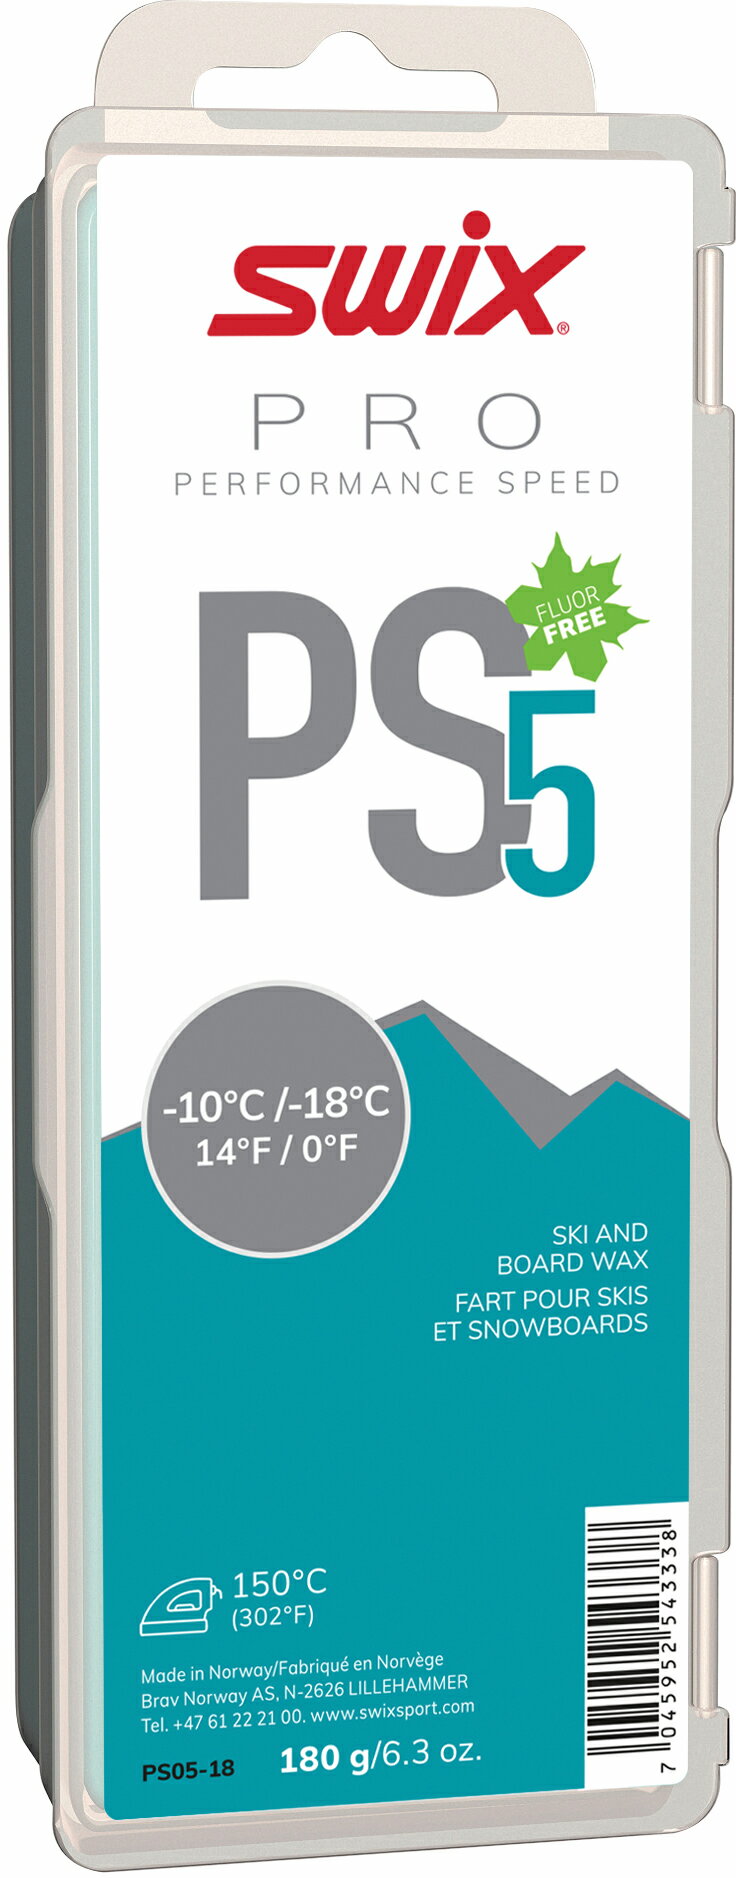 スウィックス SWIX PRO PERFORMANCE SPEED PS PS5ターコイズ 180g PS05-18